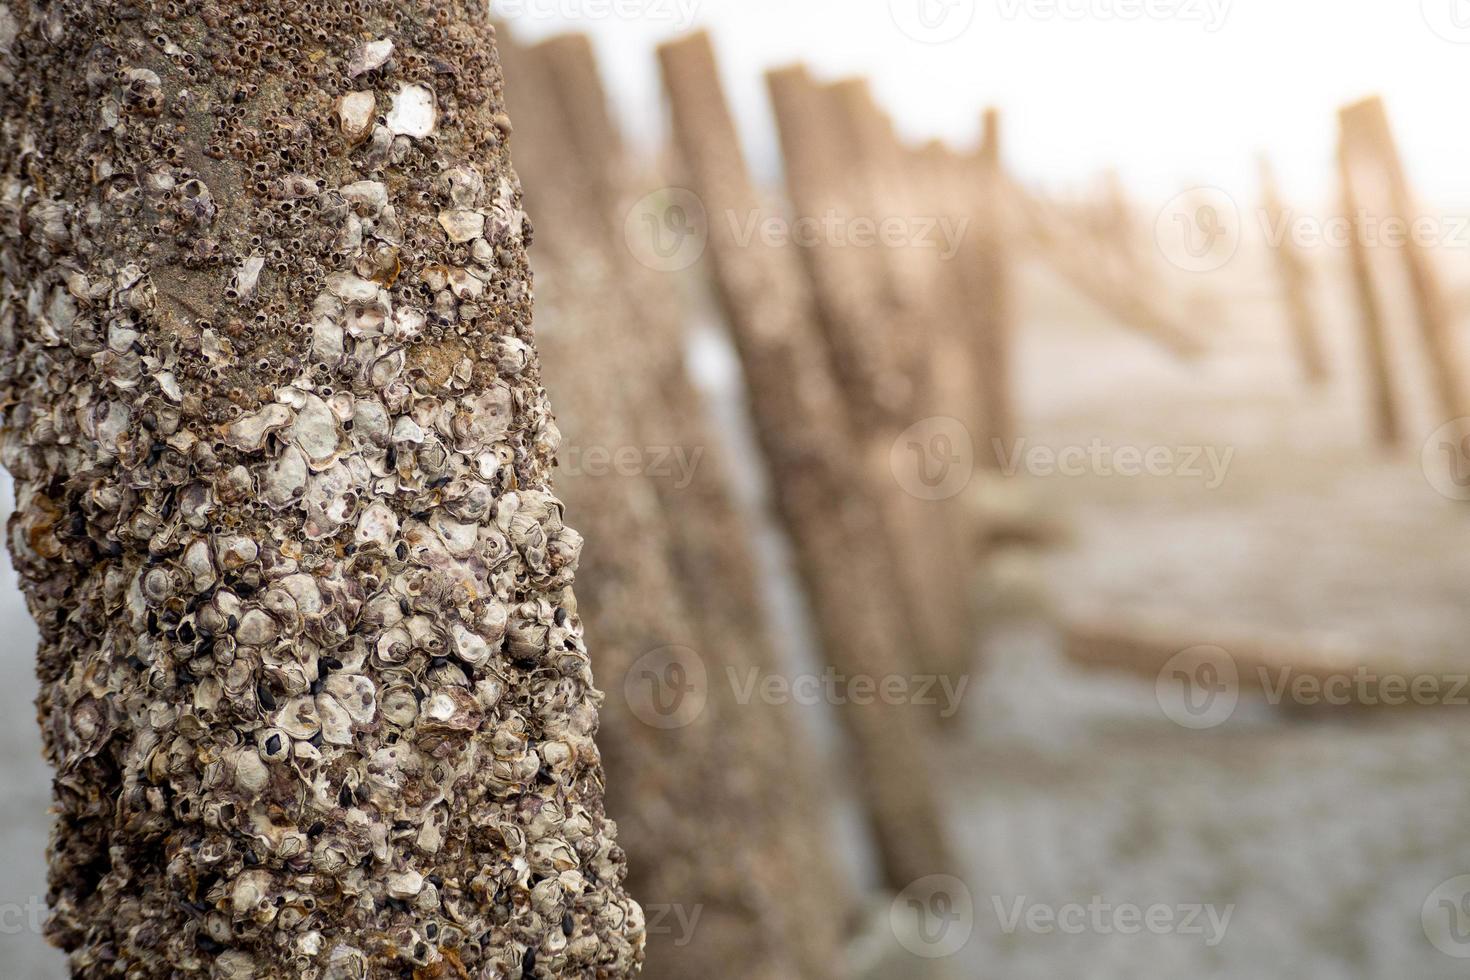 golfbrekerpalen bedekt met zeepokken en algen bovenaan staan op een Noordzeestrand waar een stel langs loopt. - afbeelding foto